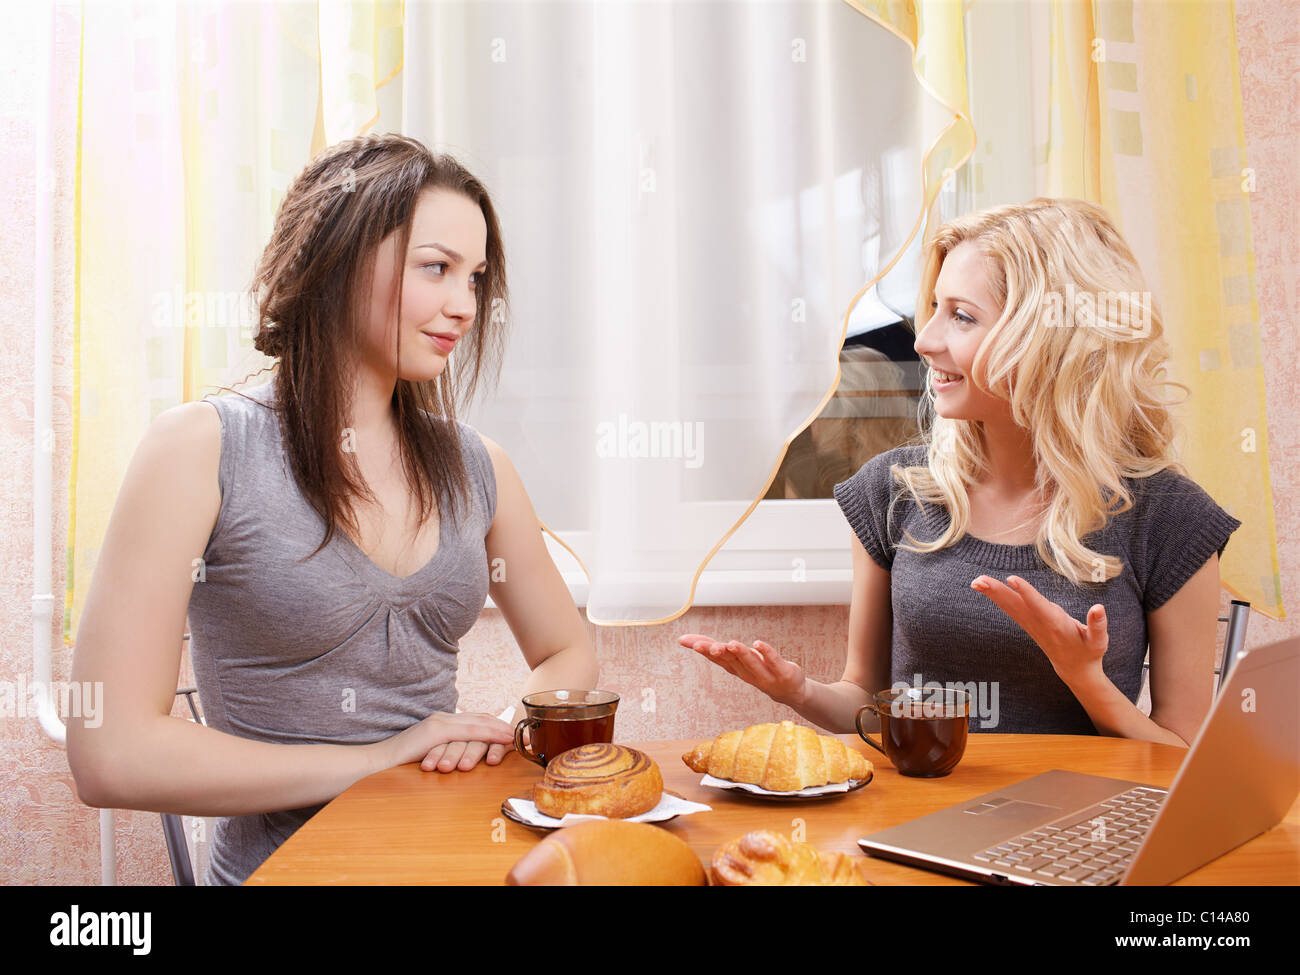 Подруги сидели и пили. Две девушки за столом. Подруги за столом. Чаепитие с подругами. Две женщины сидят за столом.